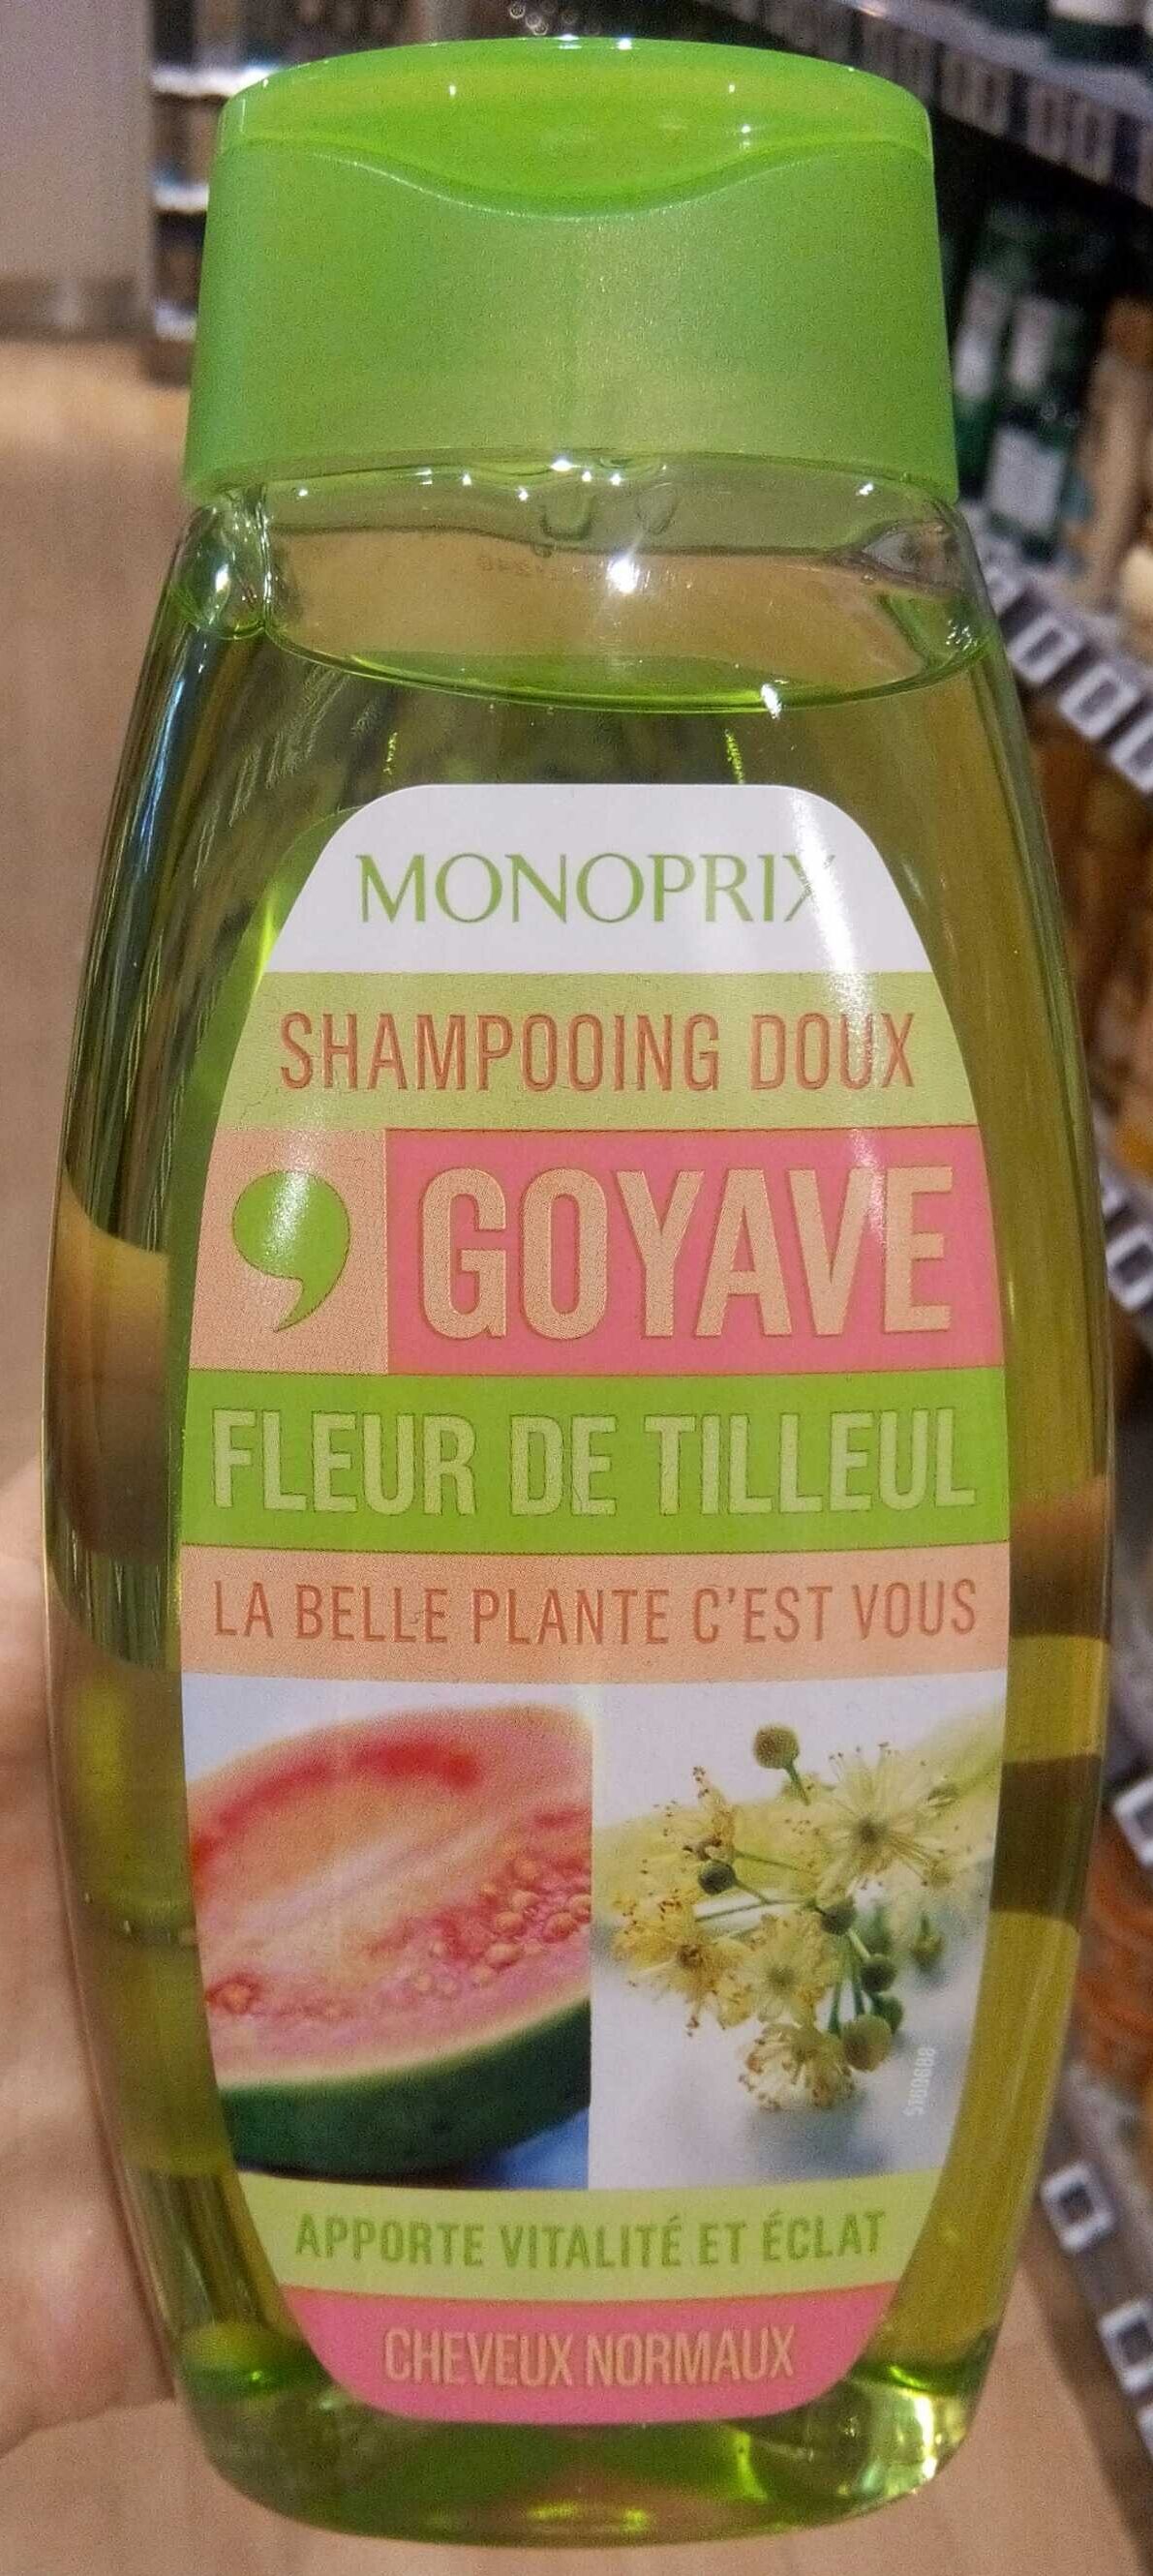 Shampooing doux goyave fleur de tilleul - Product - fr